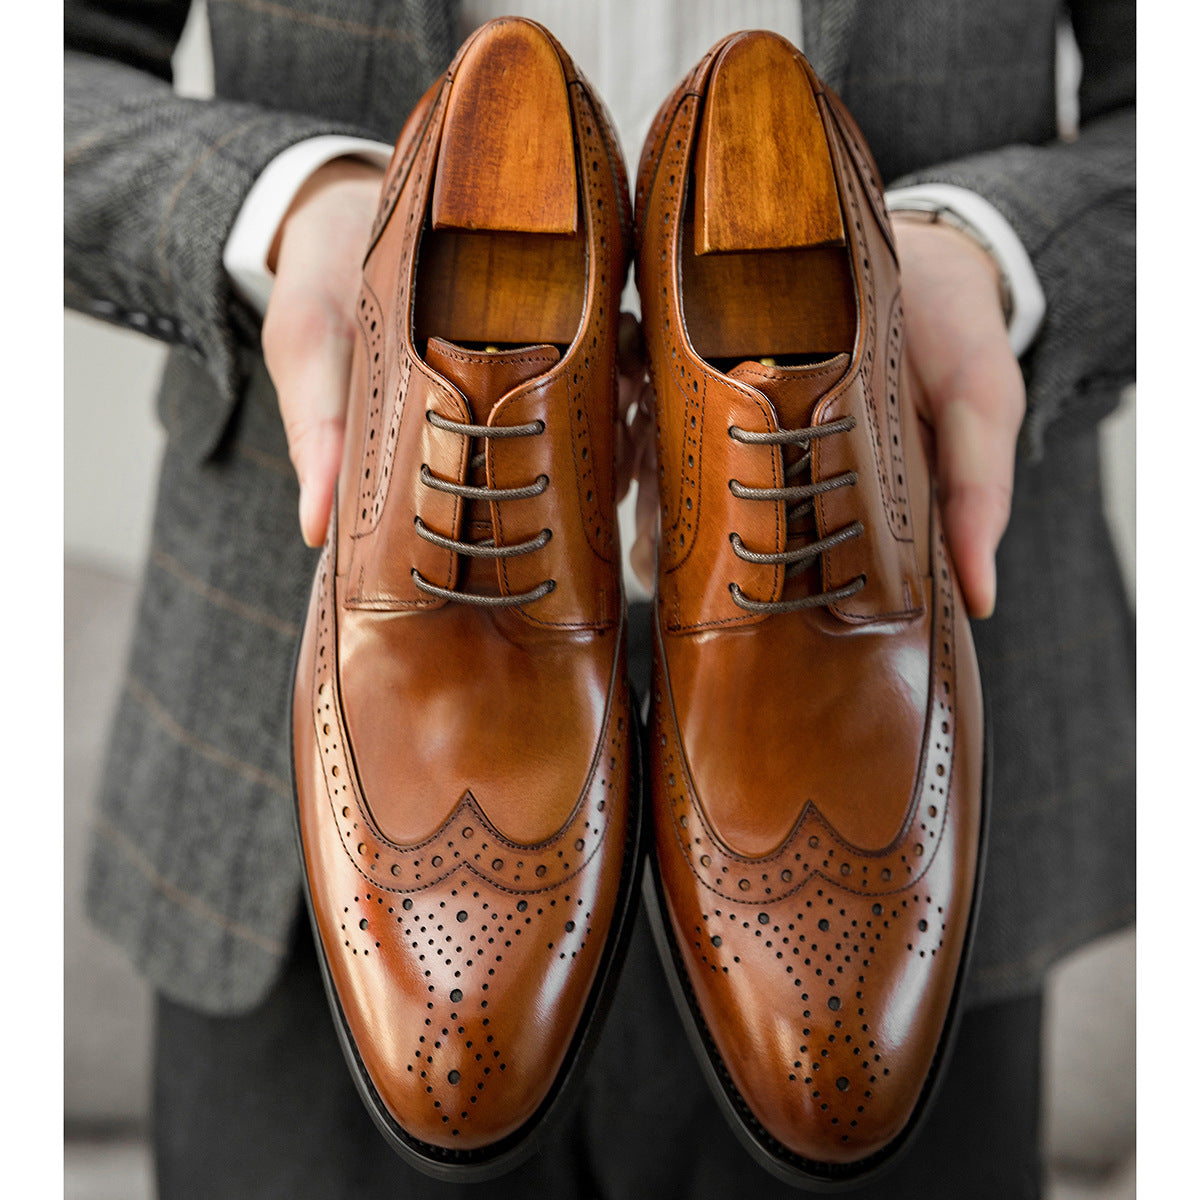 Zapatos clásicos elegantes de cuero tallado de estilo británico para hombre